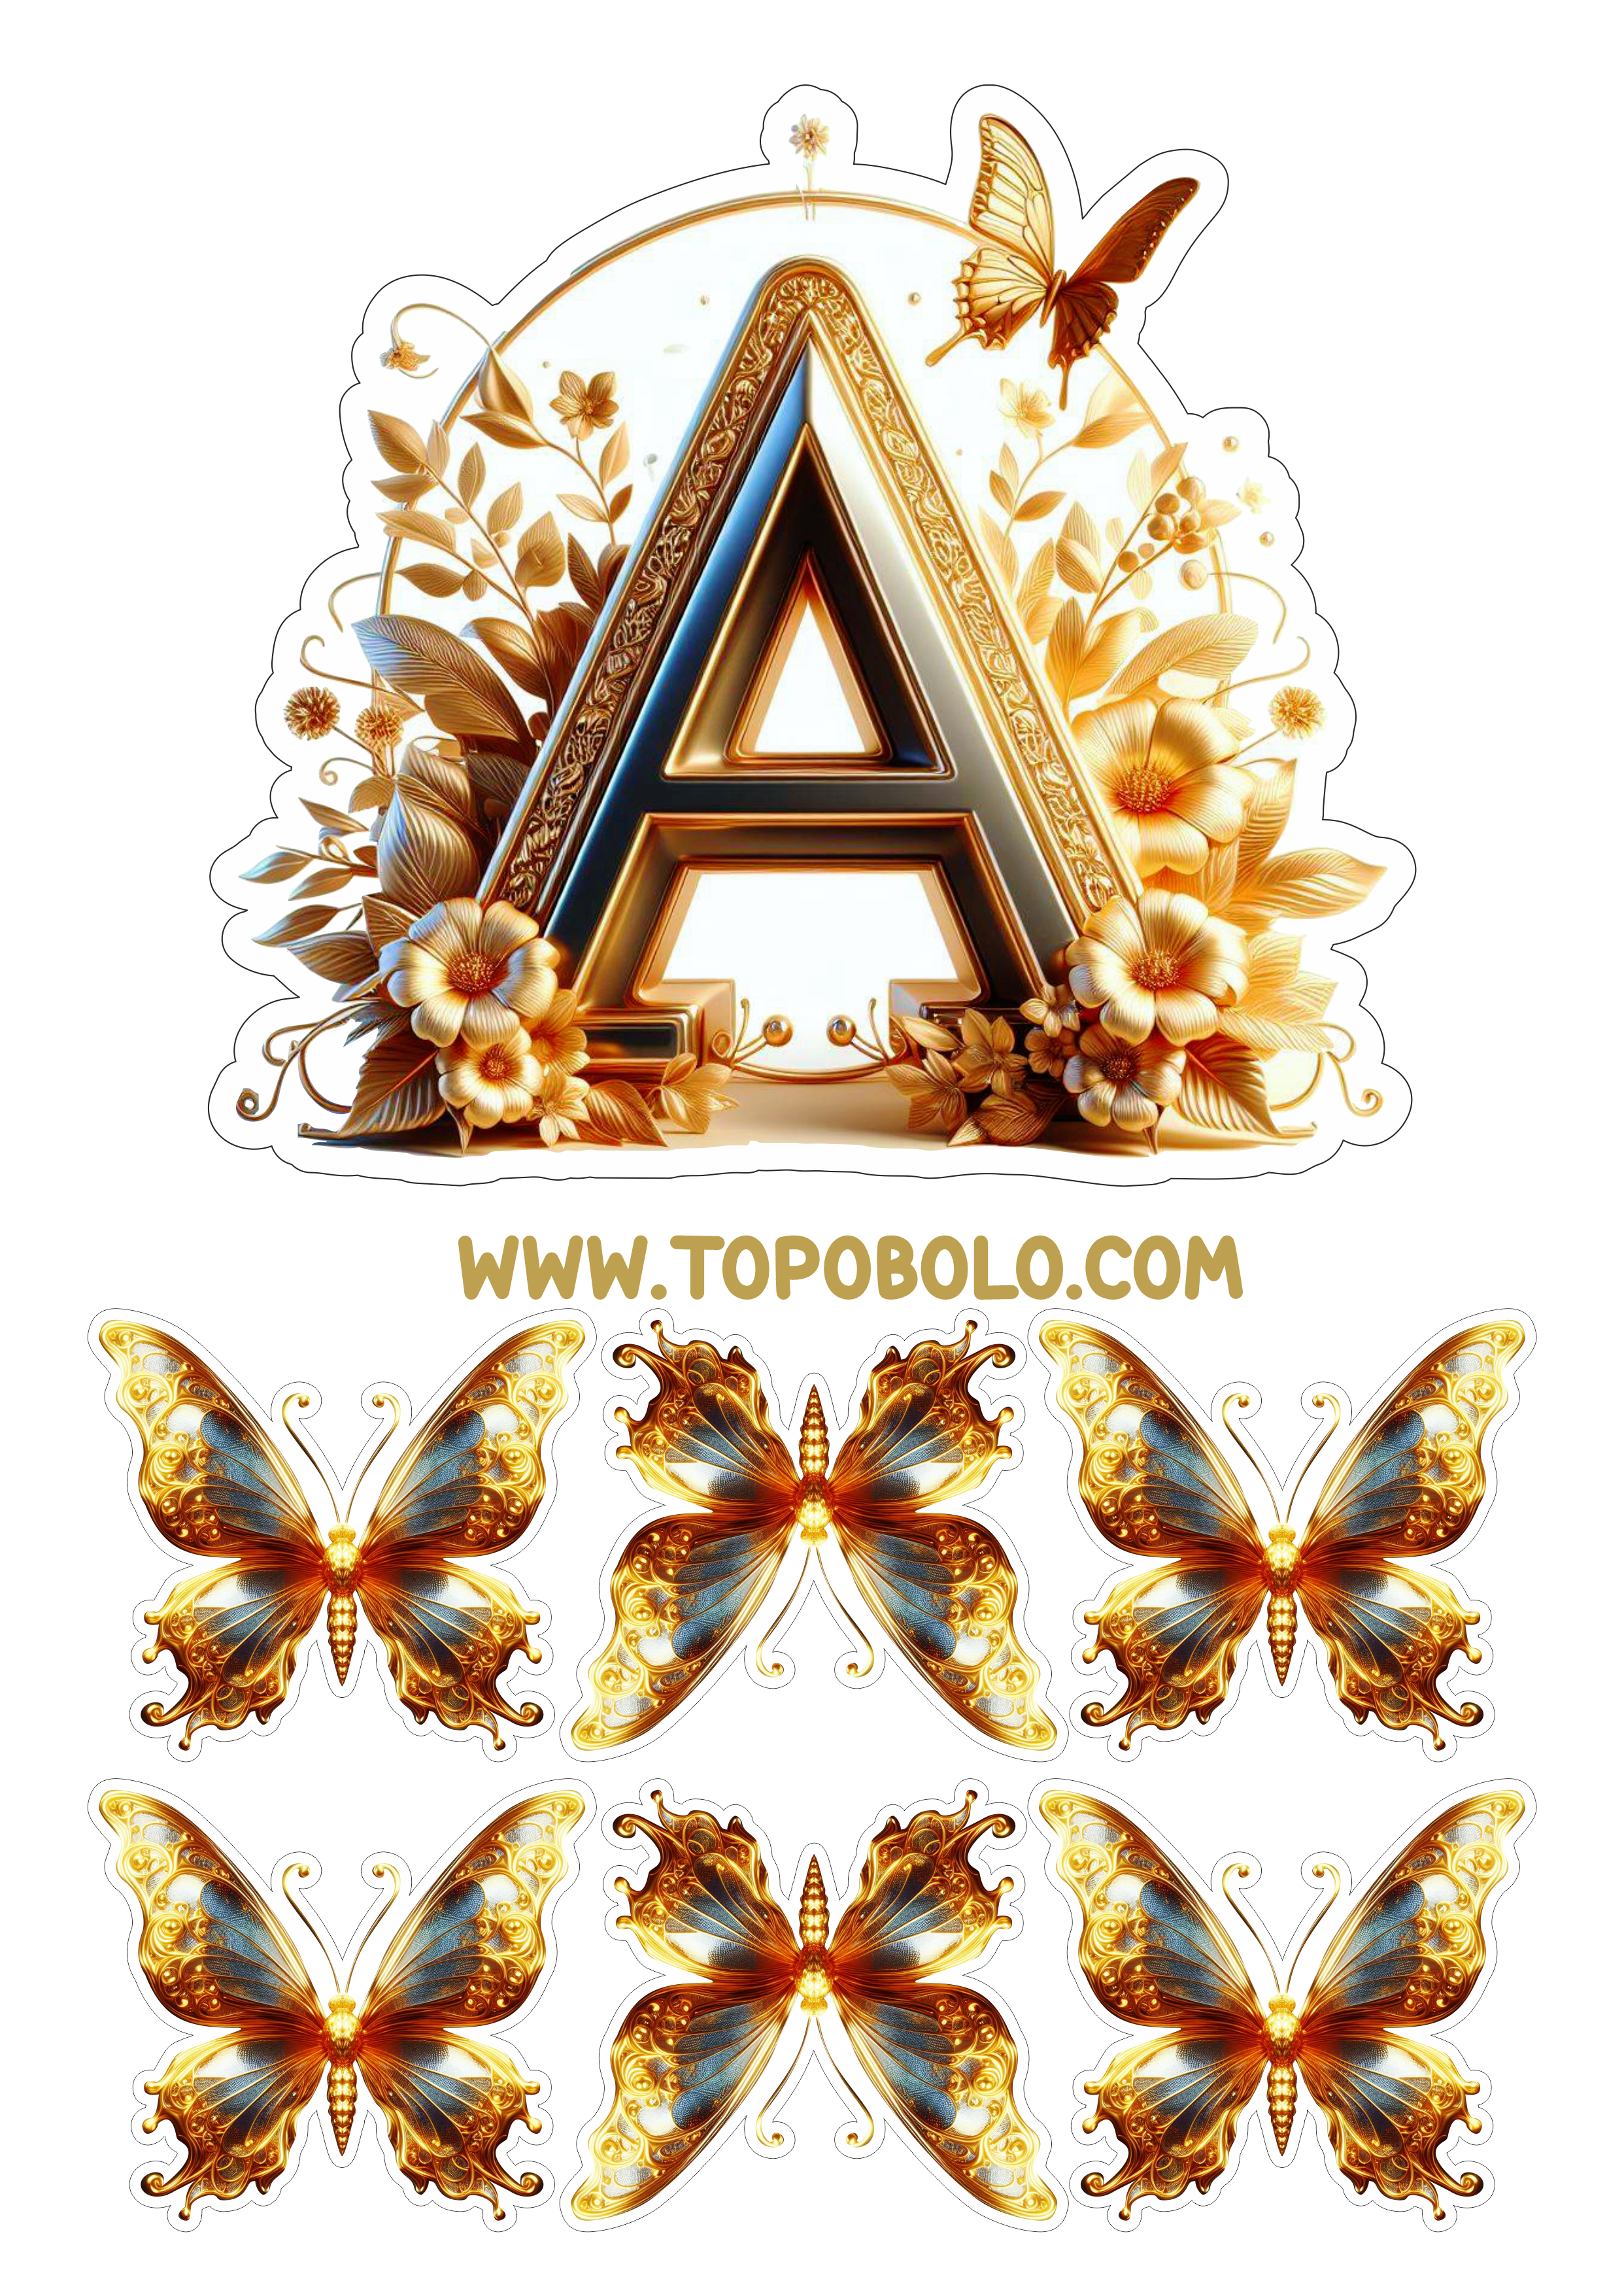 Topo de bolo letras douradas com borboletas aniversário personalizado png